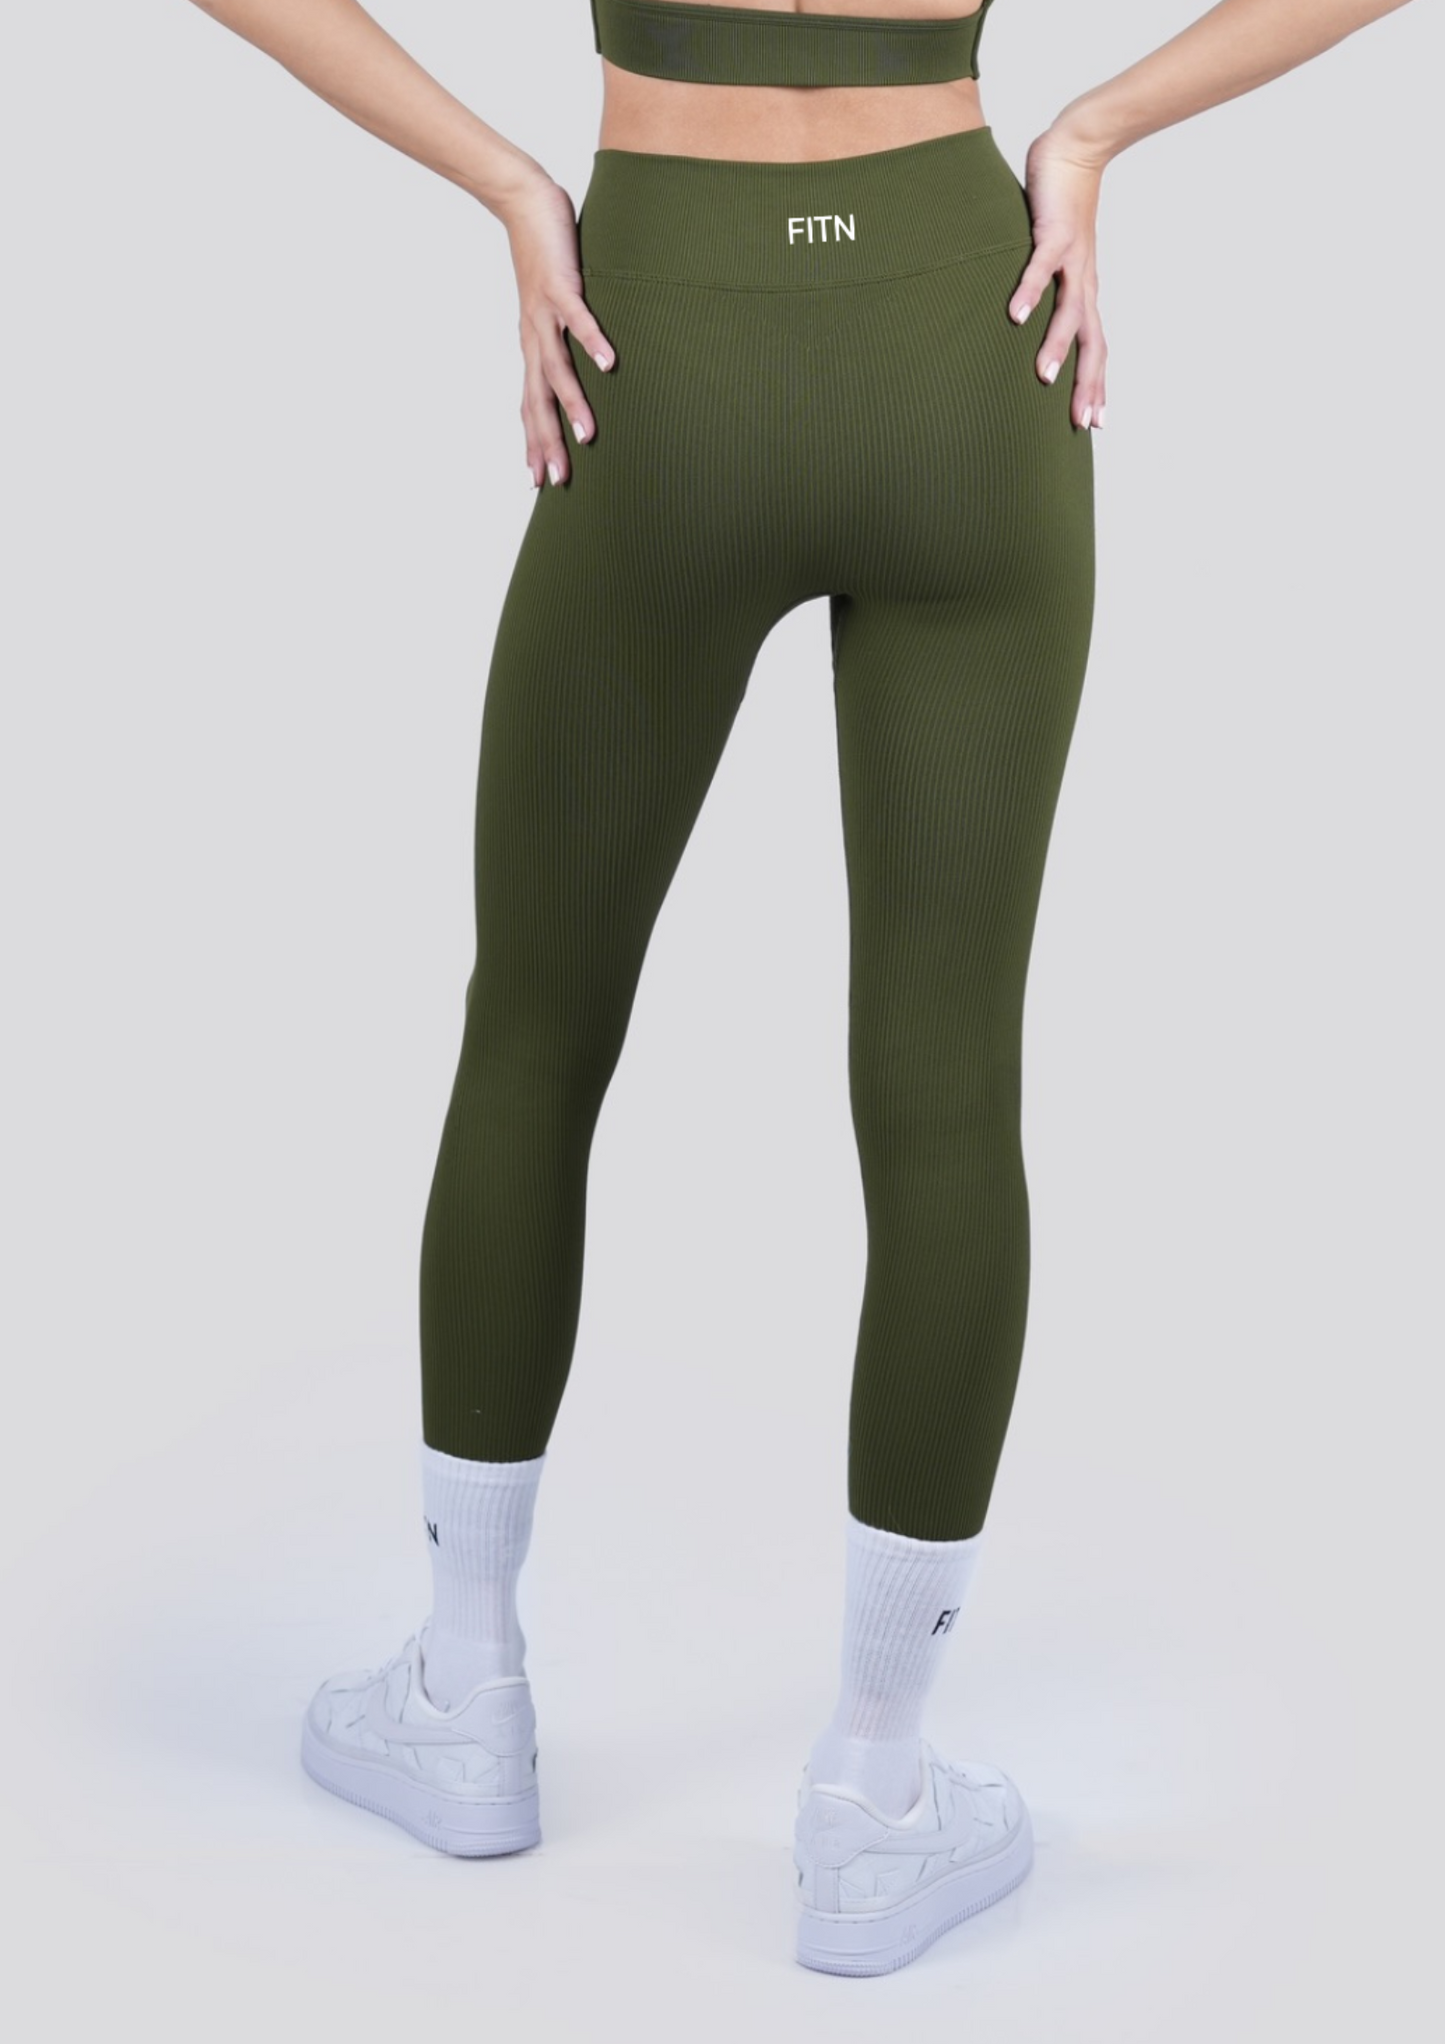 Jade green ribbed leggings